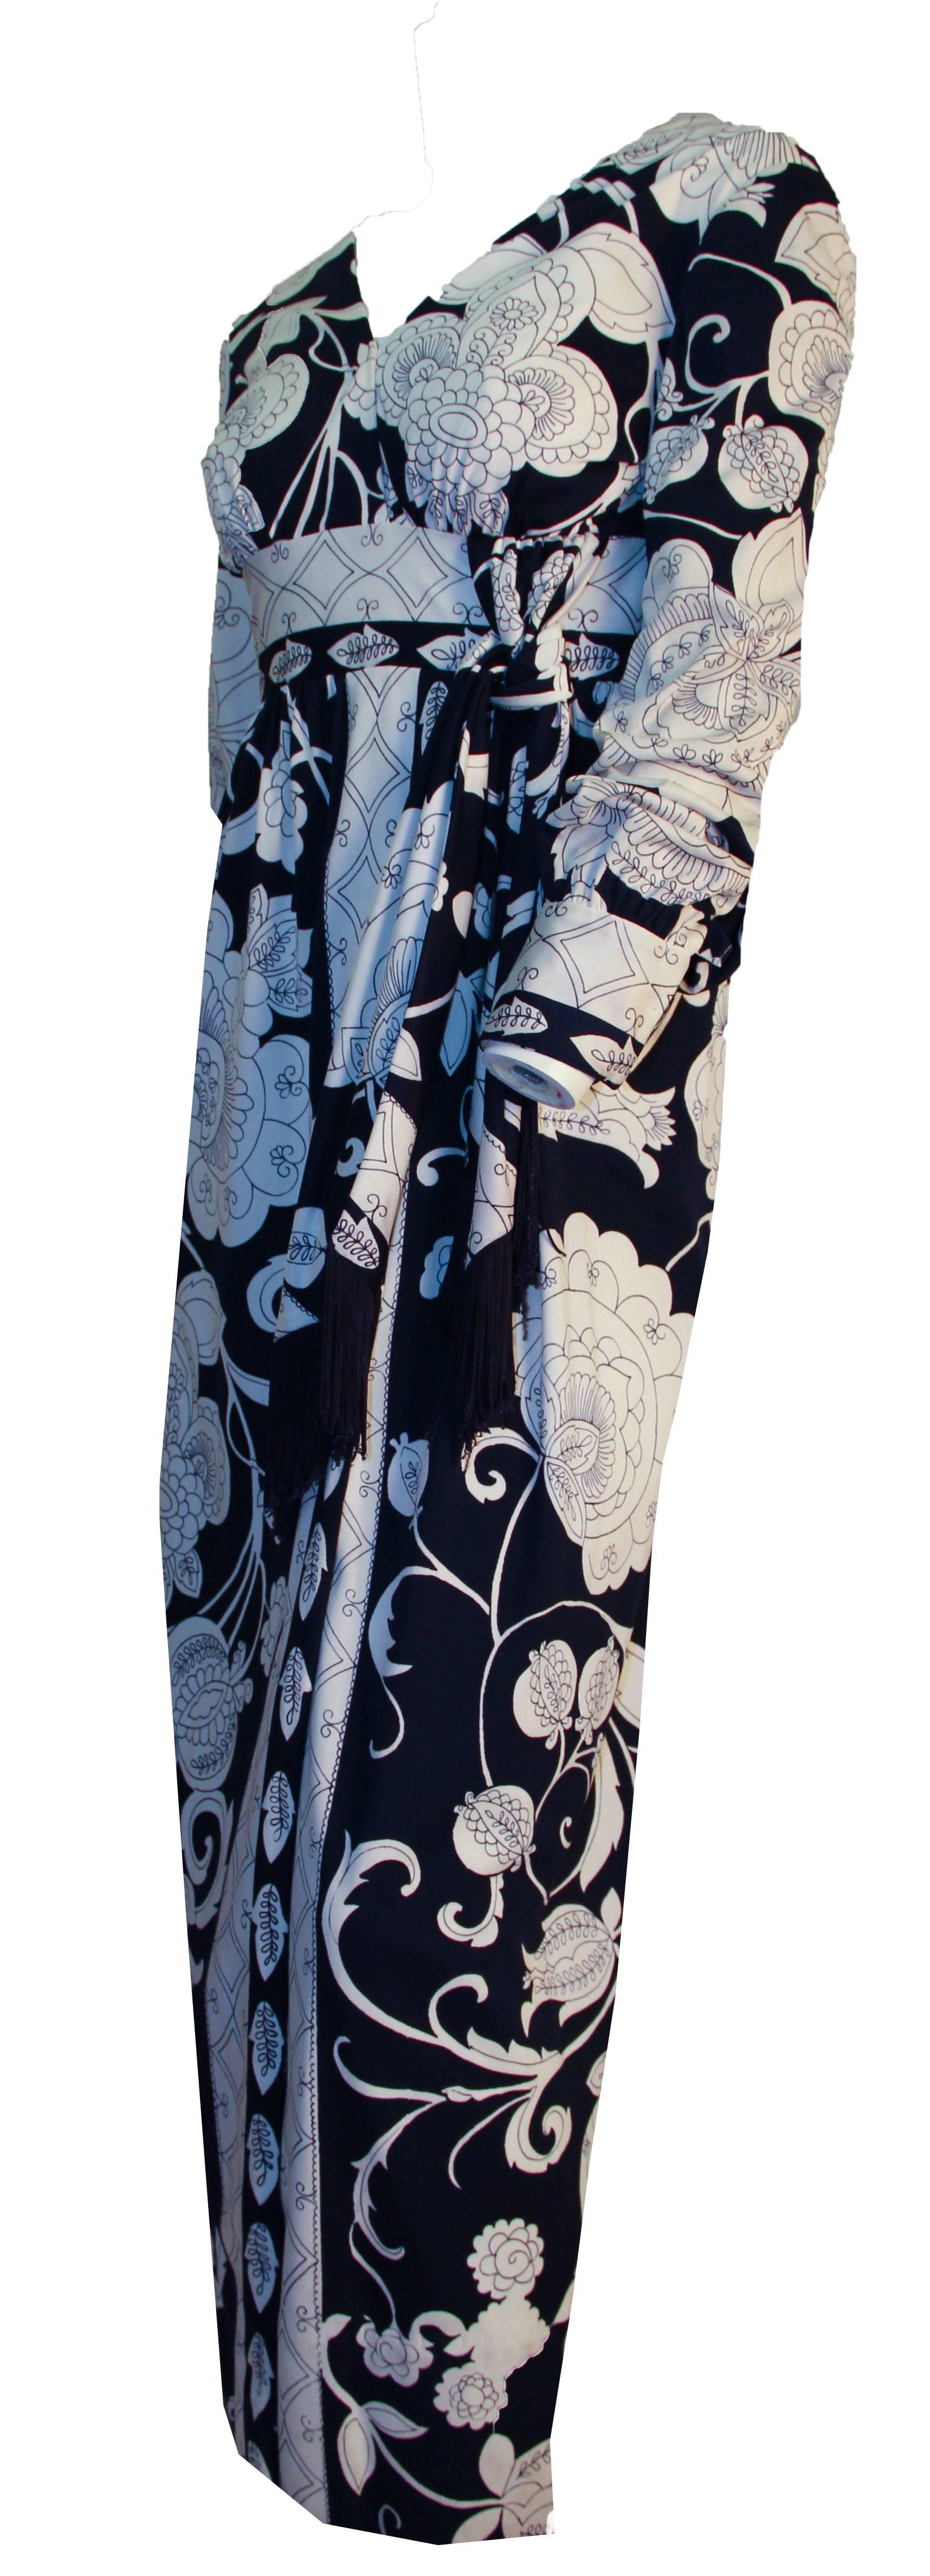 70s navy & white fantasy print long sleeve column dress. Empire waist faux sash tie trimmed in navy fringe. Nylon zipper. 

